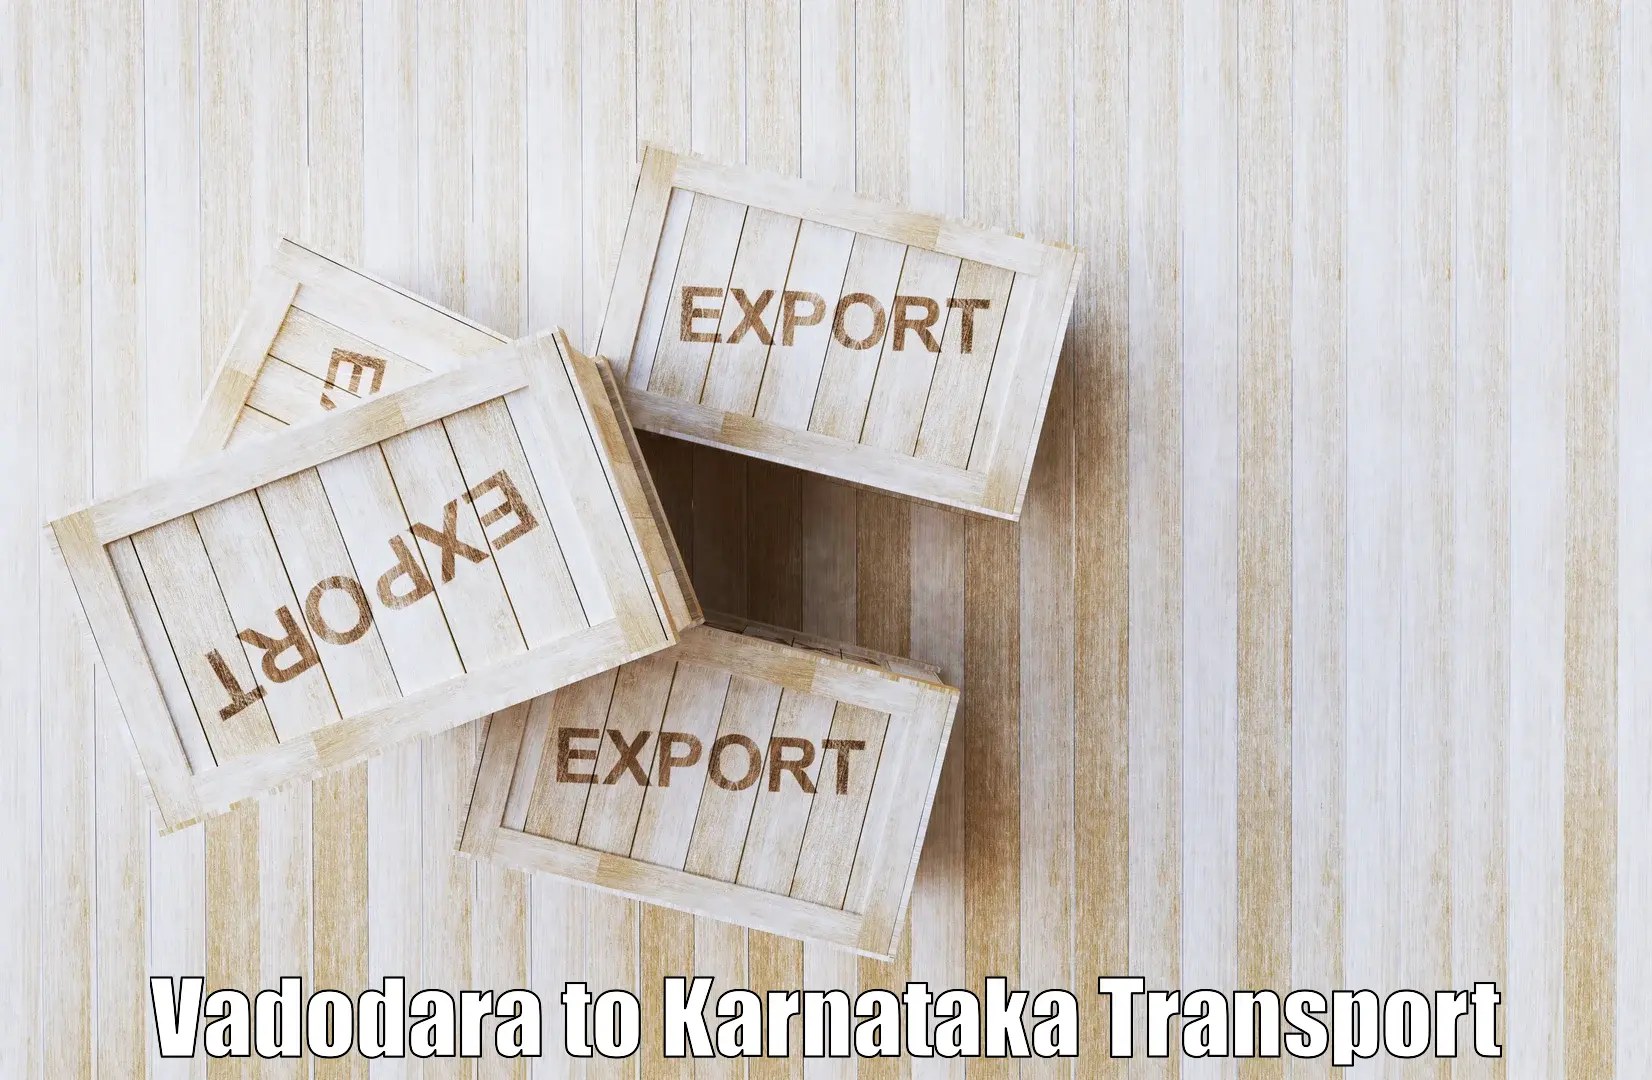 Online transport service Vadodara to Mangalore